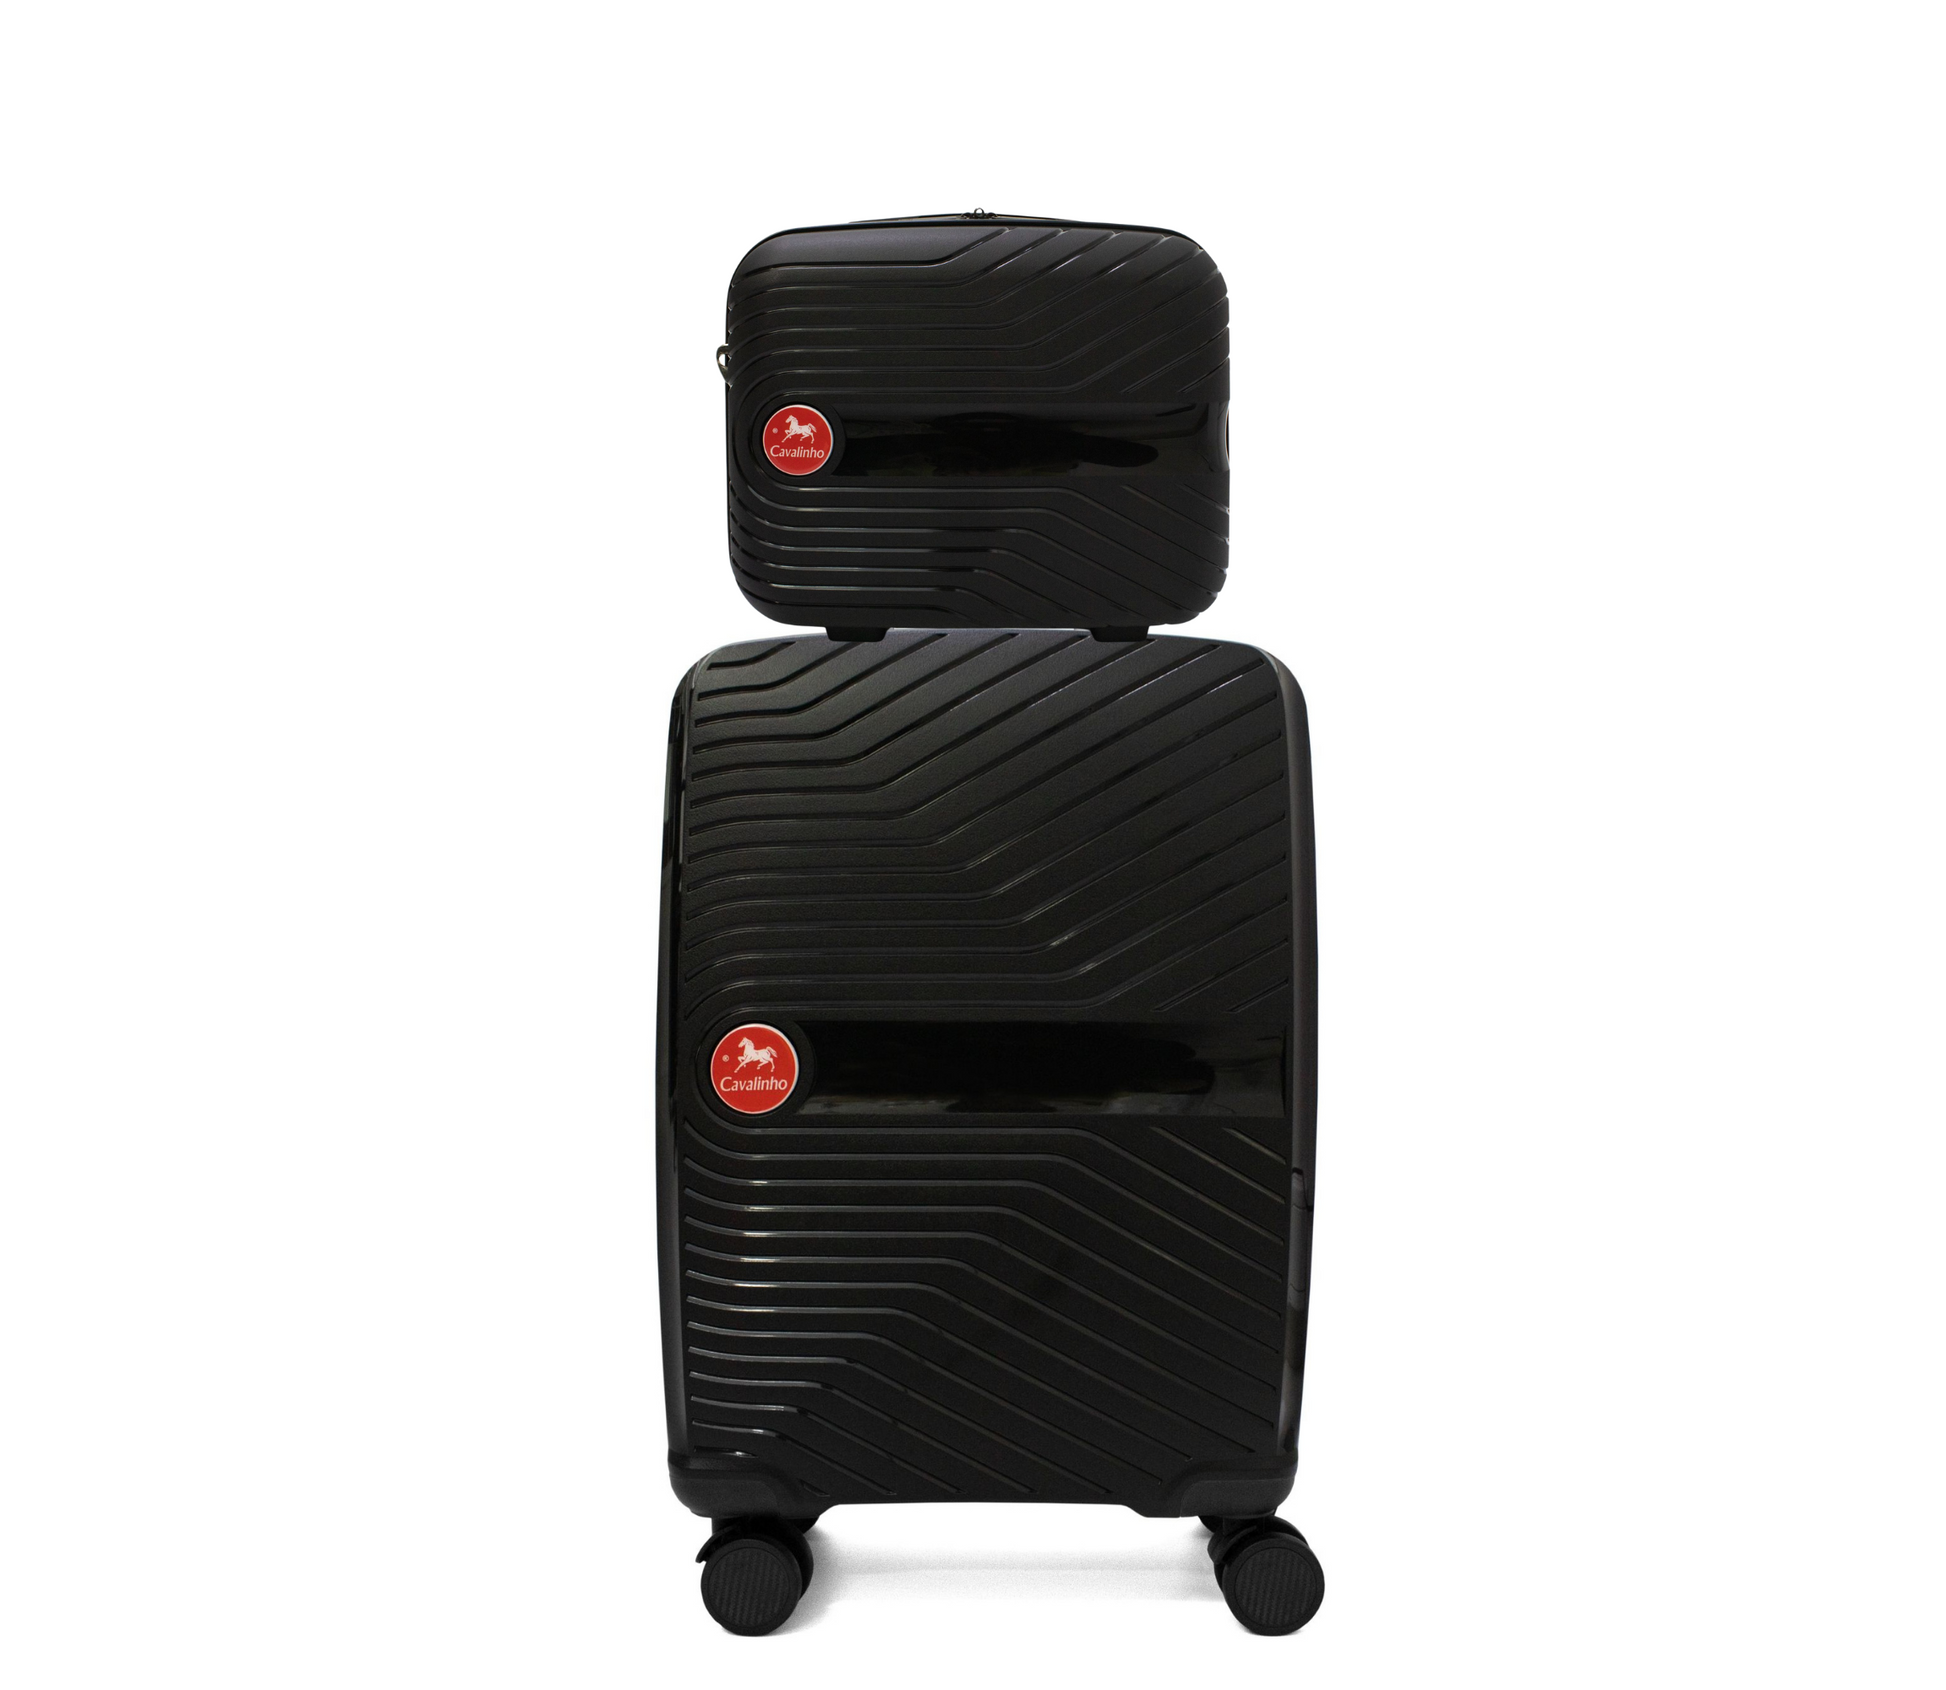 #color_ Black Black | Cavalinho Canada & USA Colorful 2 Piece Luggage Set (15" & 19") - Black Black - 68020004.0101.S1519._1